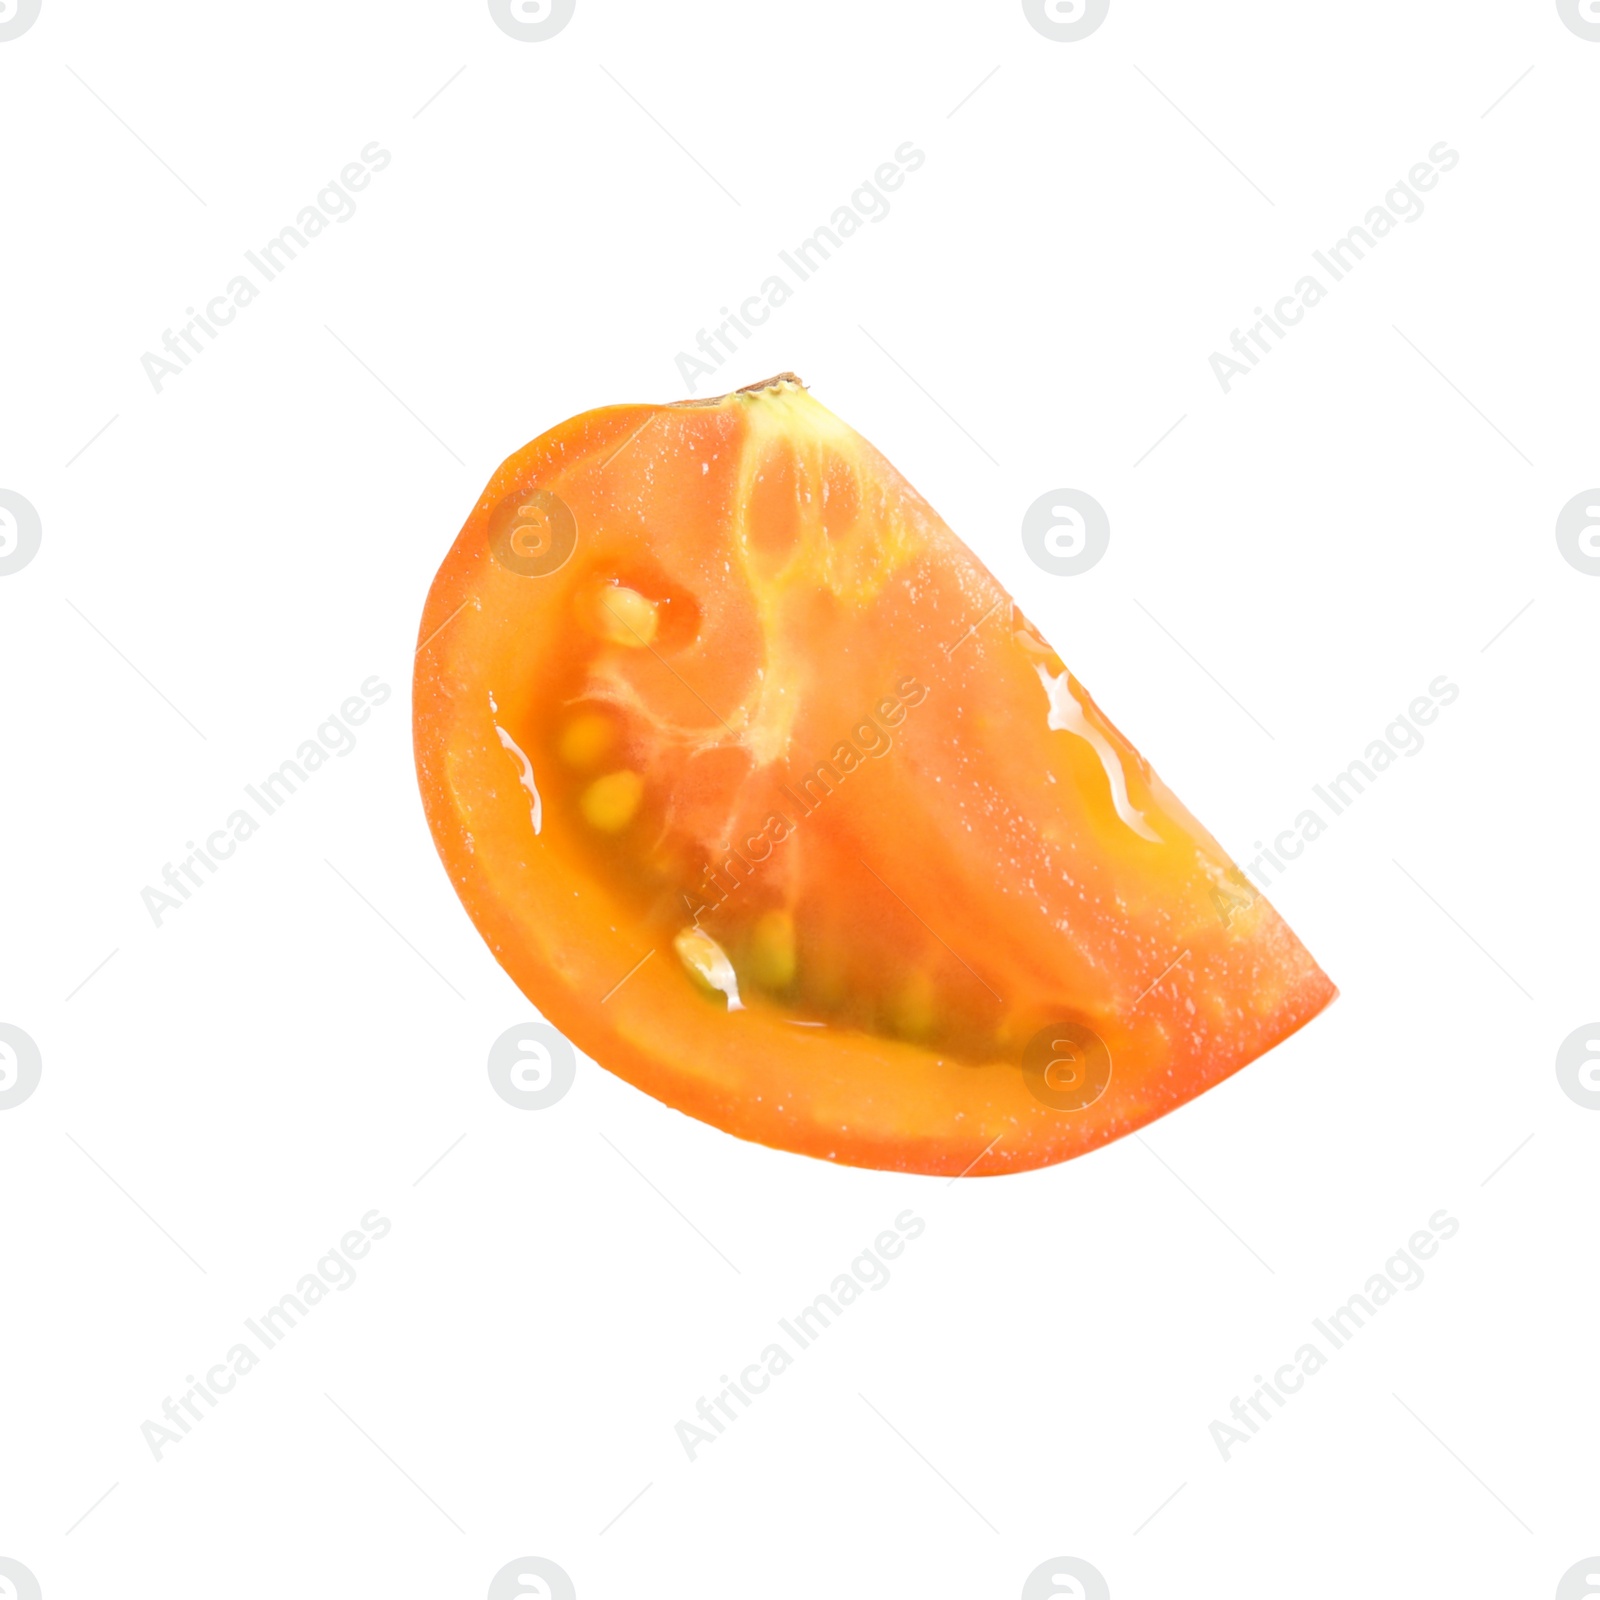 Photo of Piece of fresh ripe yellow tomato on white background